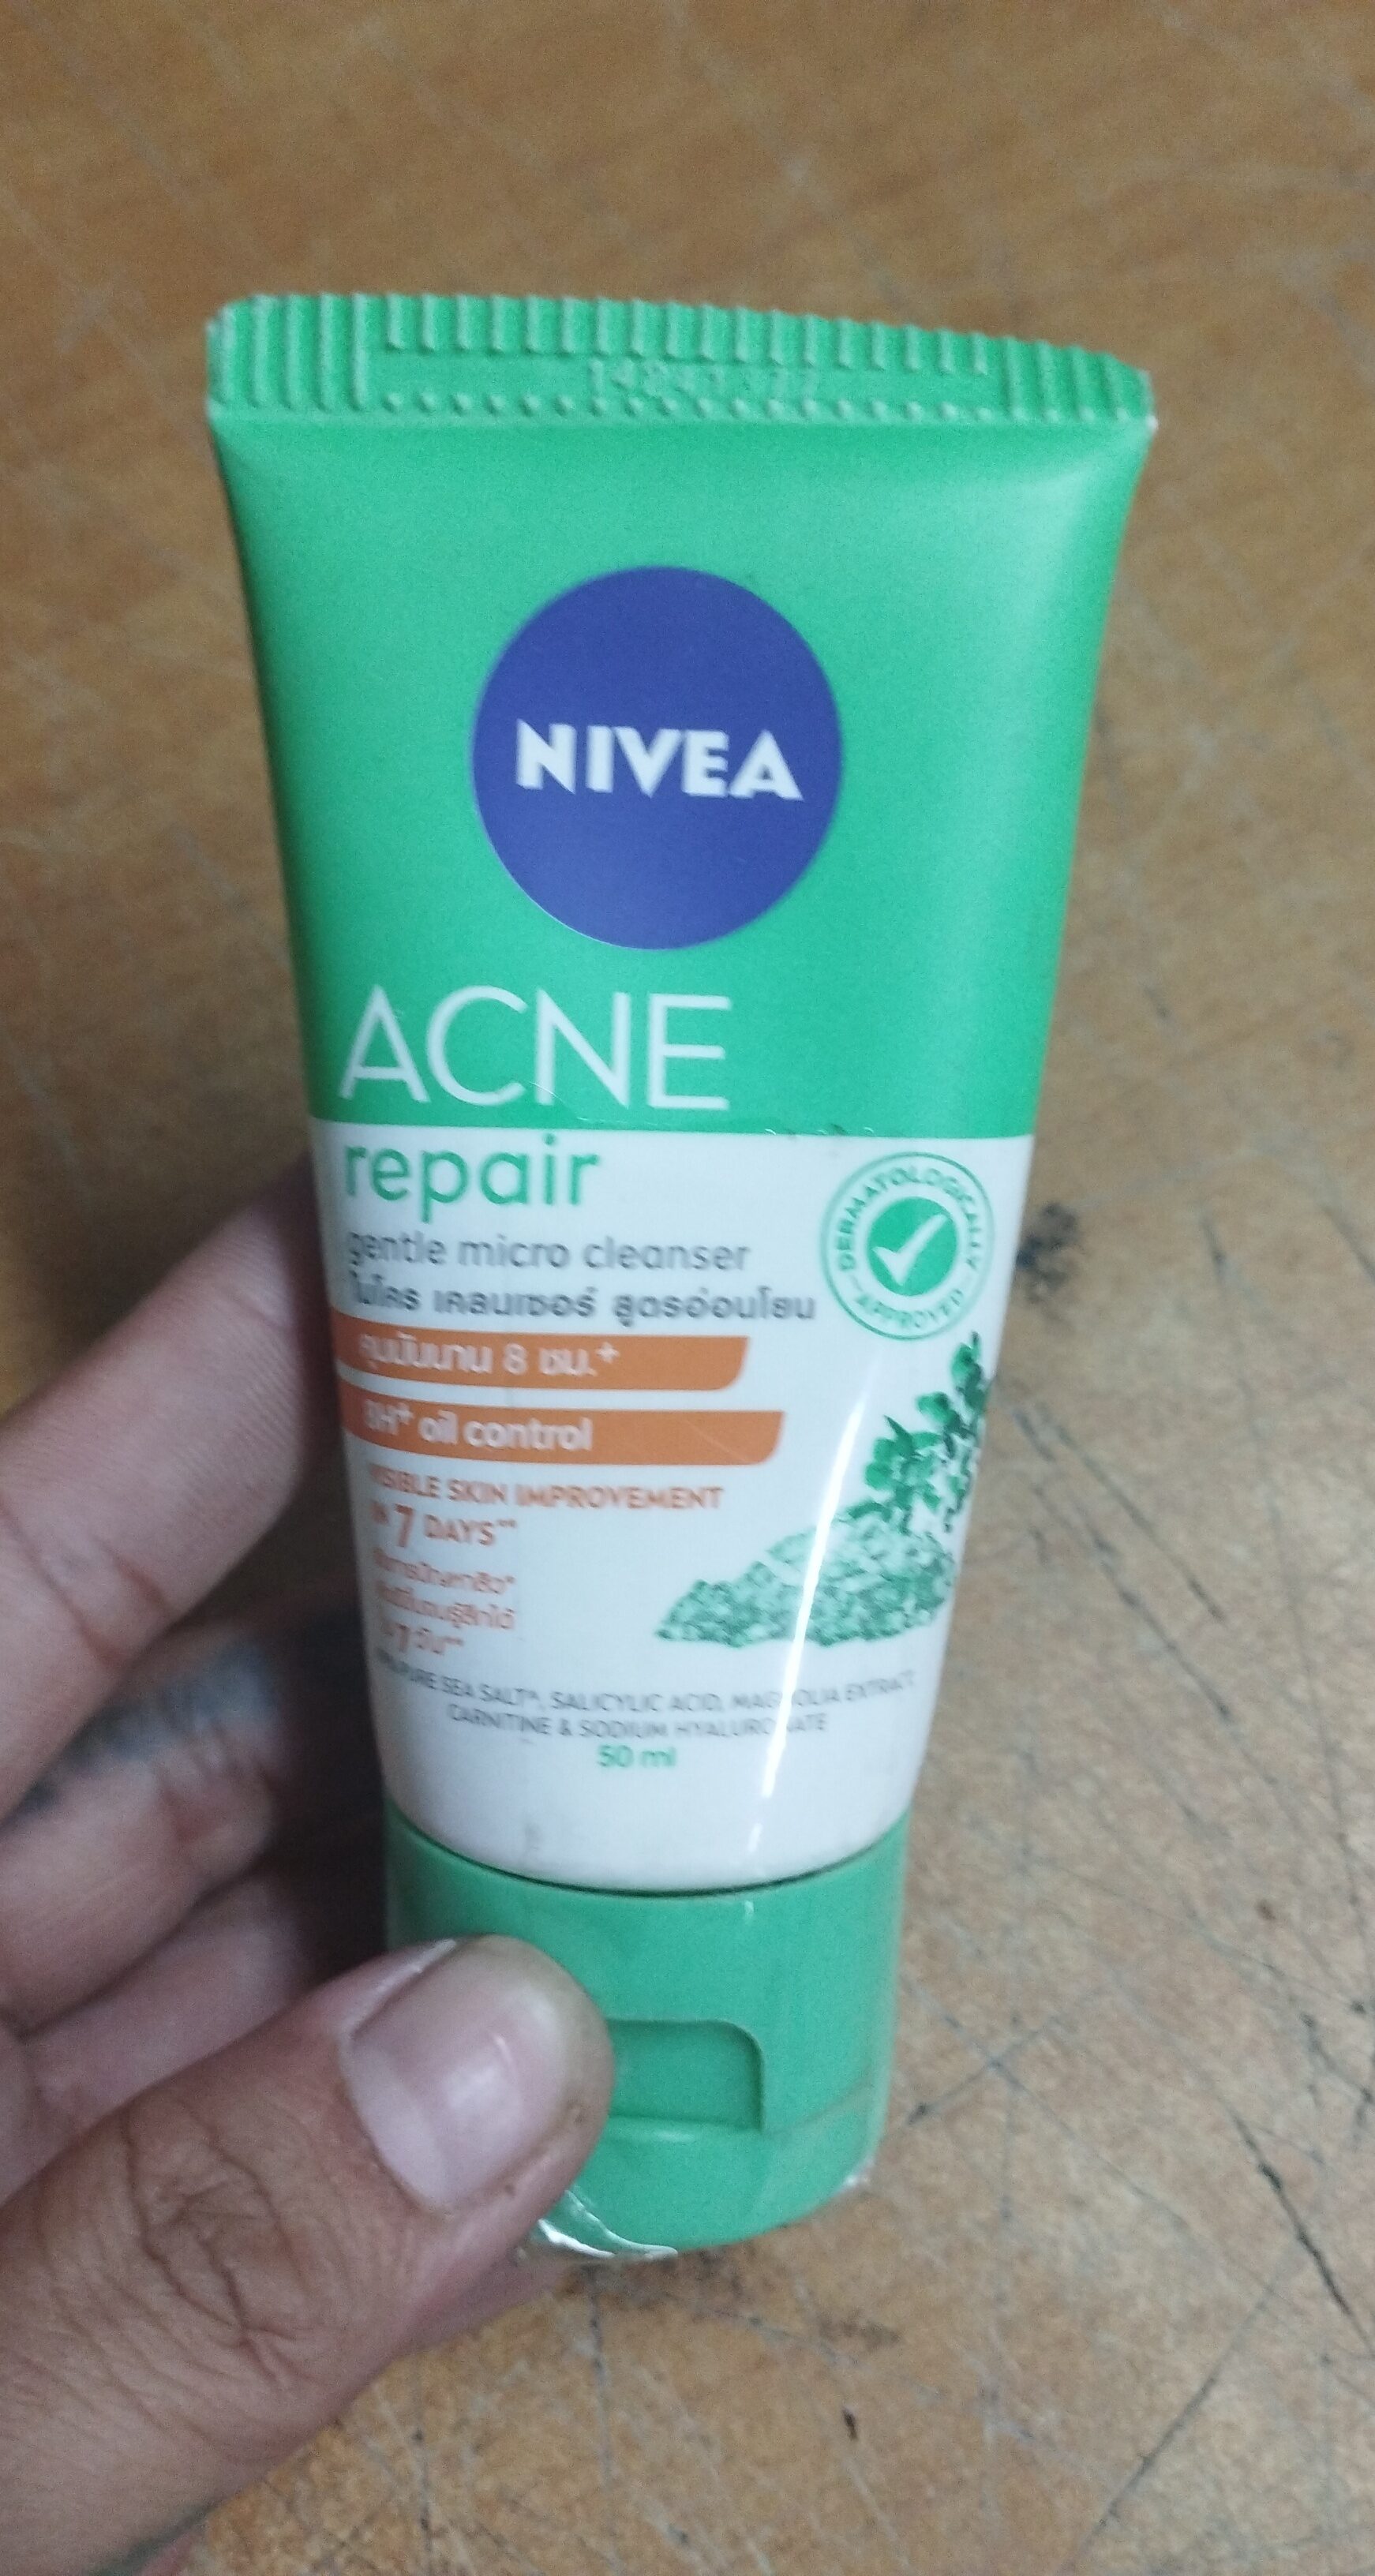 Nivea acne repair - Tuote - en